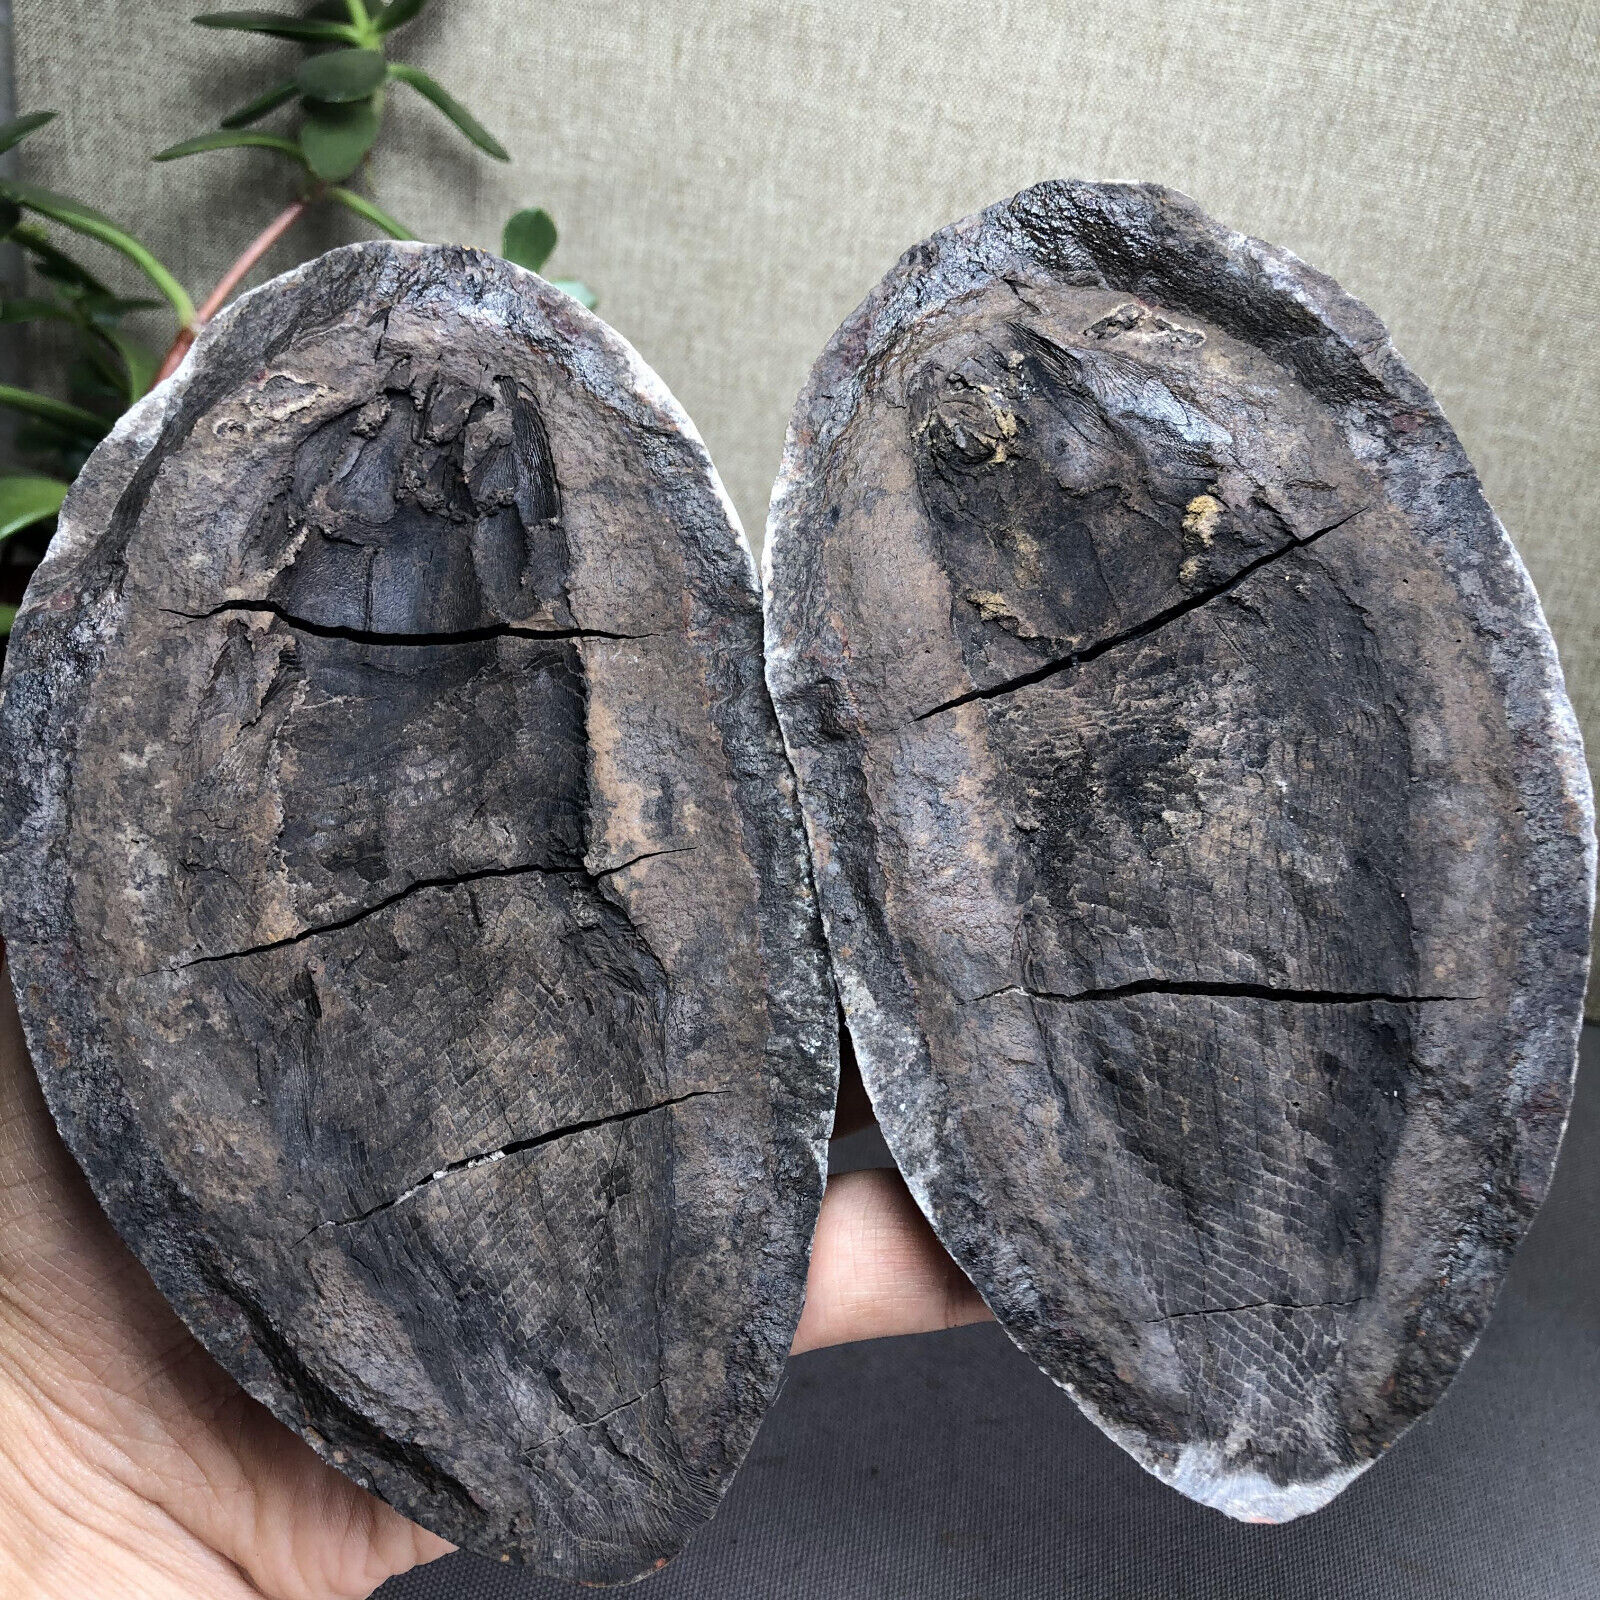 AAA+ Rare Bony Fish Fossil Nodule Triassic Concretion Madagascar 721g A2692